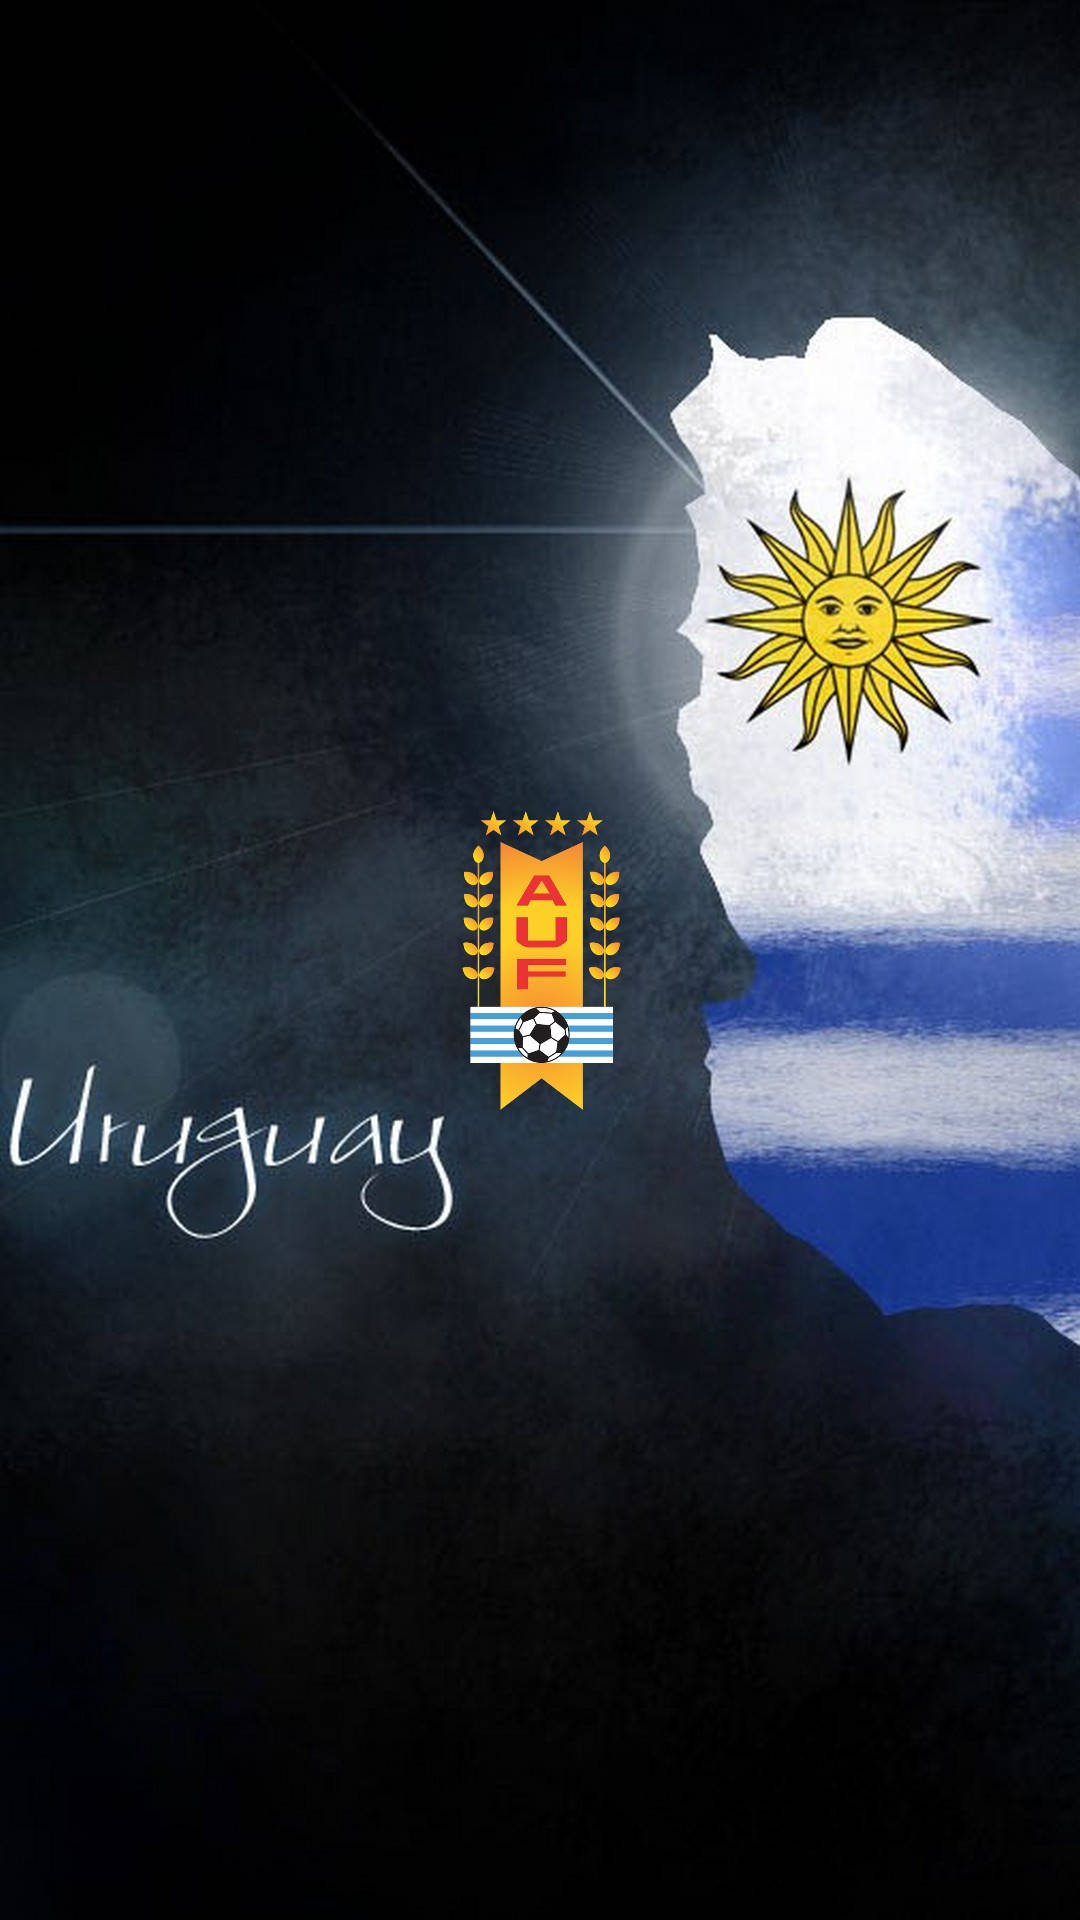 Uruguay Stylized Sun Logo Background